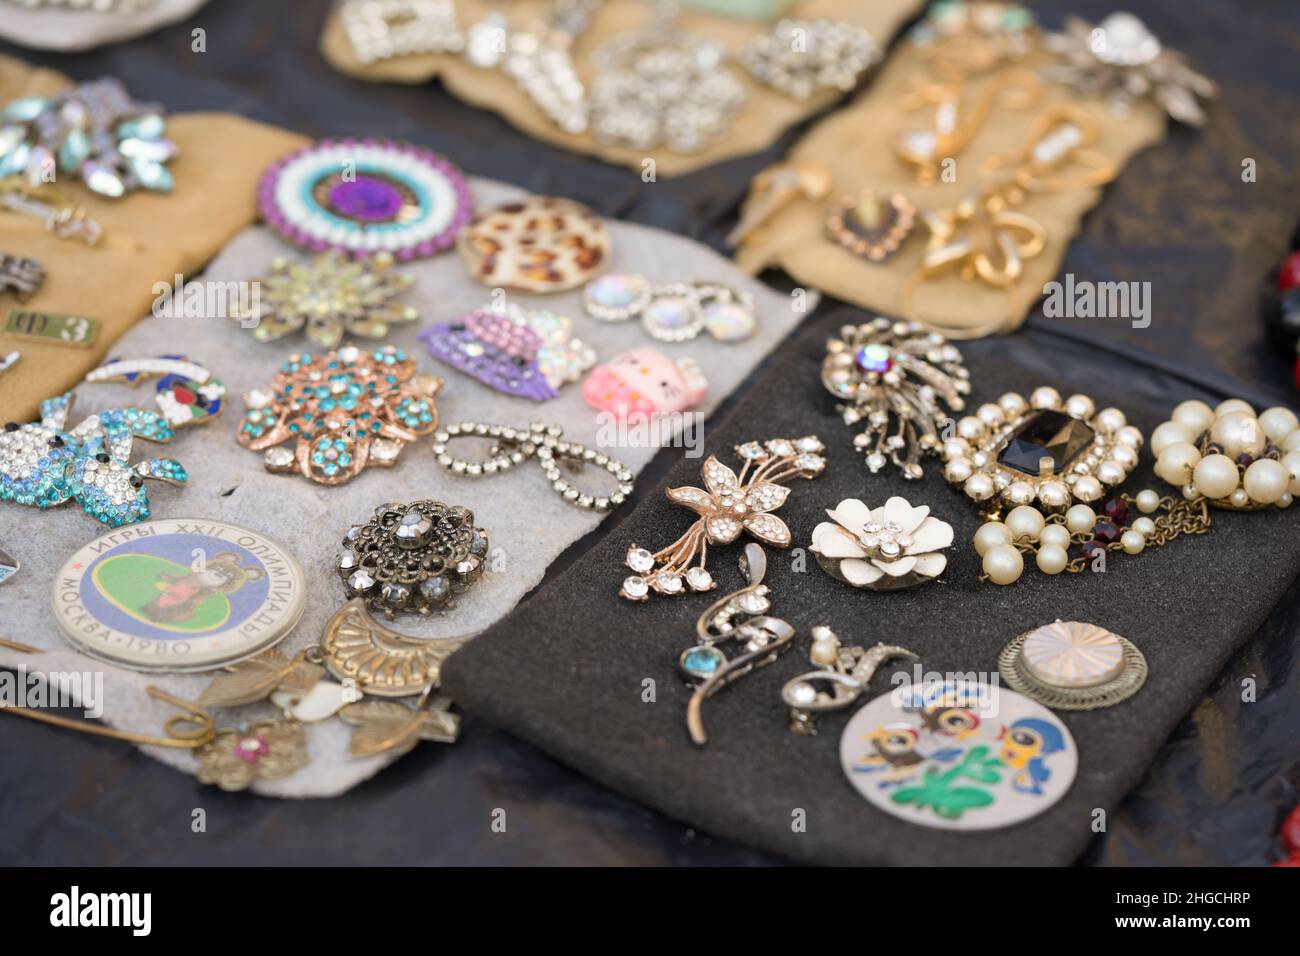 Lviv, Ucraina - 16 gennaio 2022 : Antiquariato sul mercato delle pulci - primo piano di gioielli d'epoca, spille d'argento, badge d'epoca. Oggetti da collezione Foto Stock